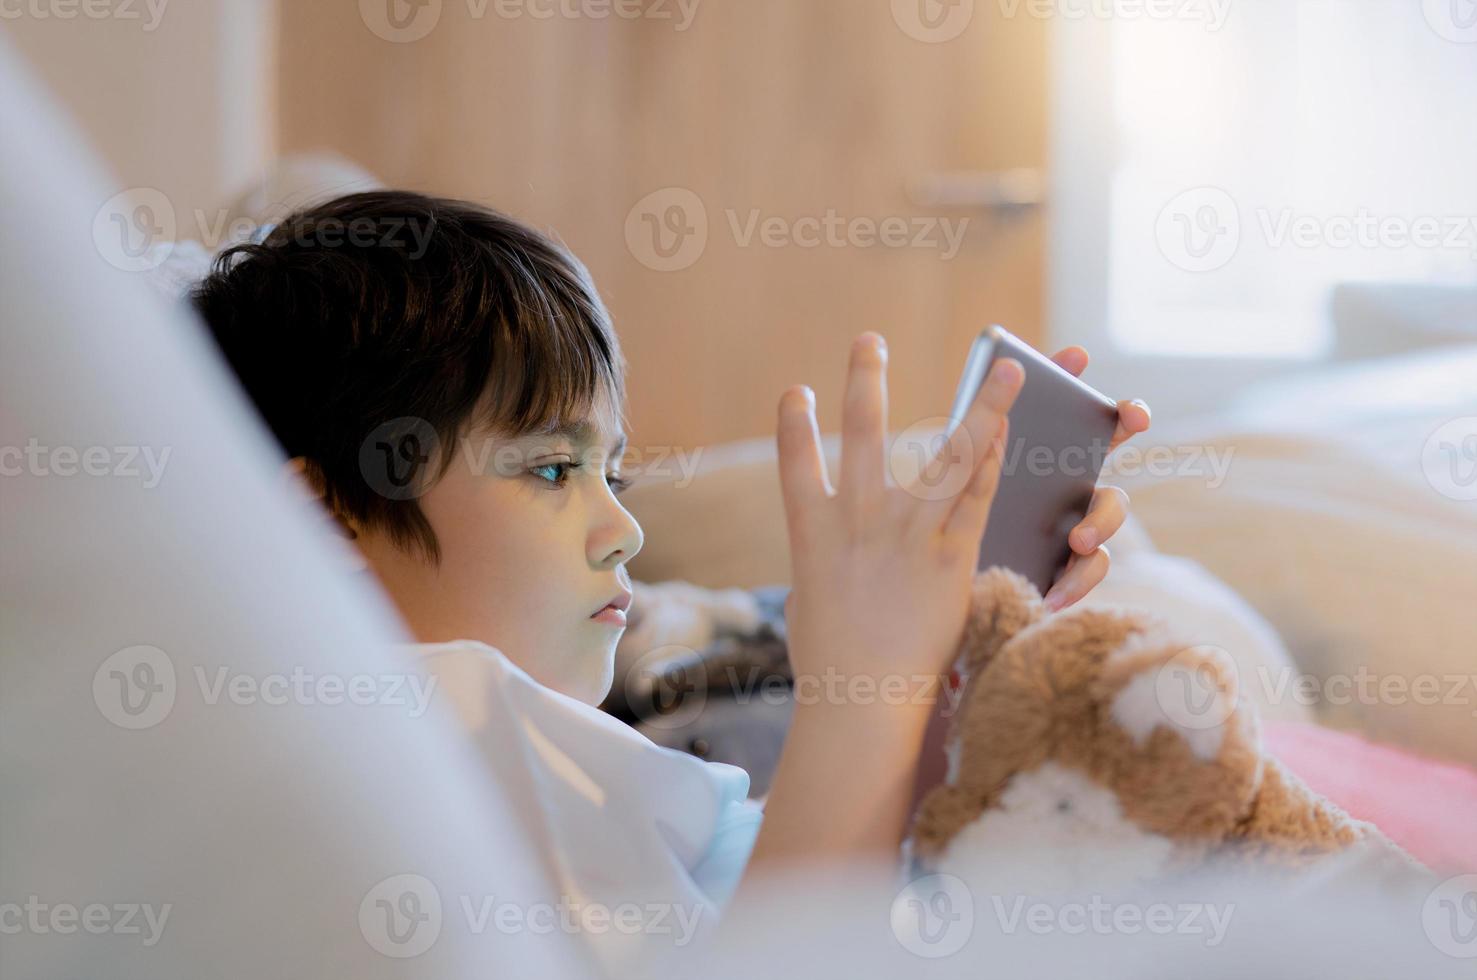 porträtt unge spelar spel på läsplatta Sammanträde på soffa, ung pojke läsning eller håller på med läxa uppkopplad på internet på hem, barn tittar på tecknad serie uppkopplad på digital pad.hem utbildning, tillbaka till skola begrepp foto